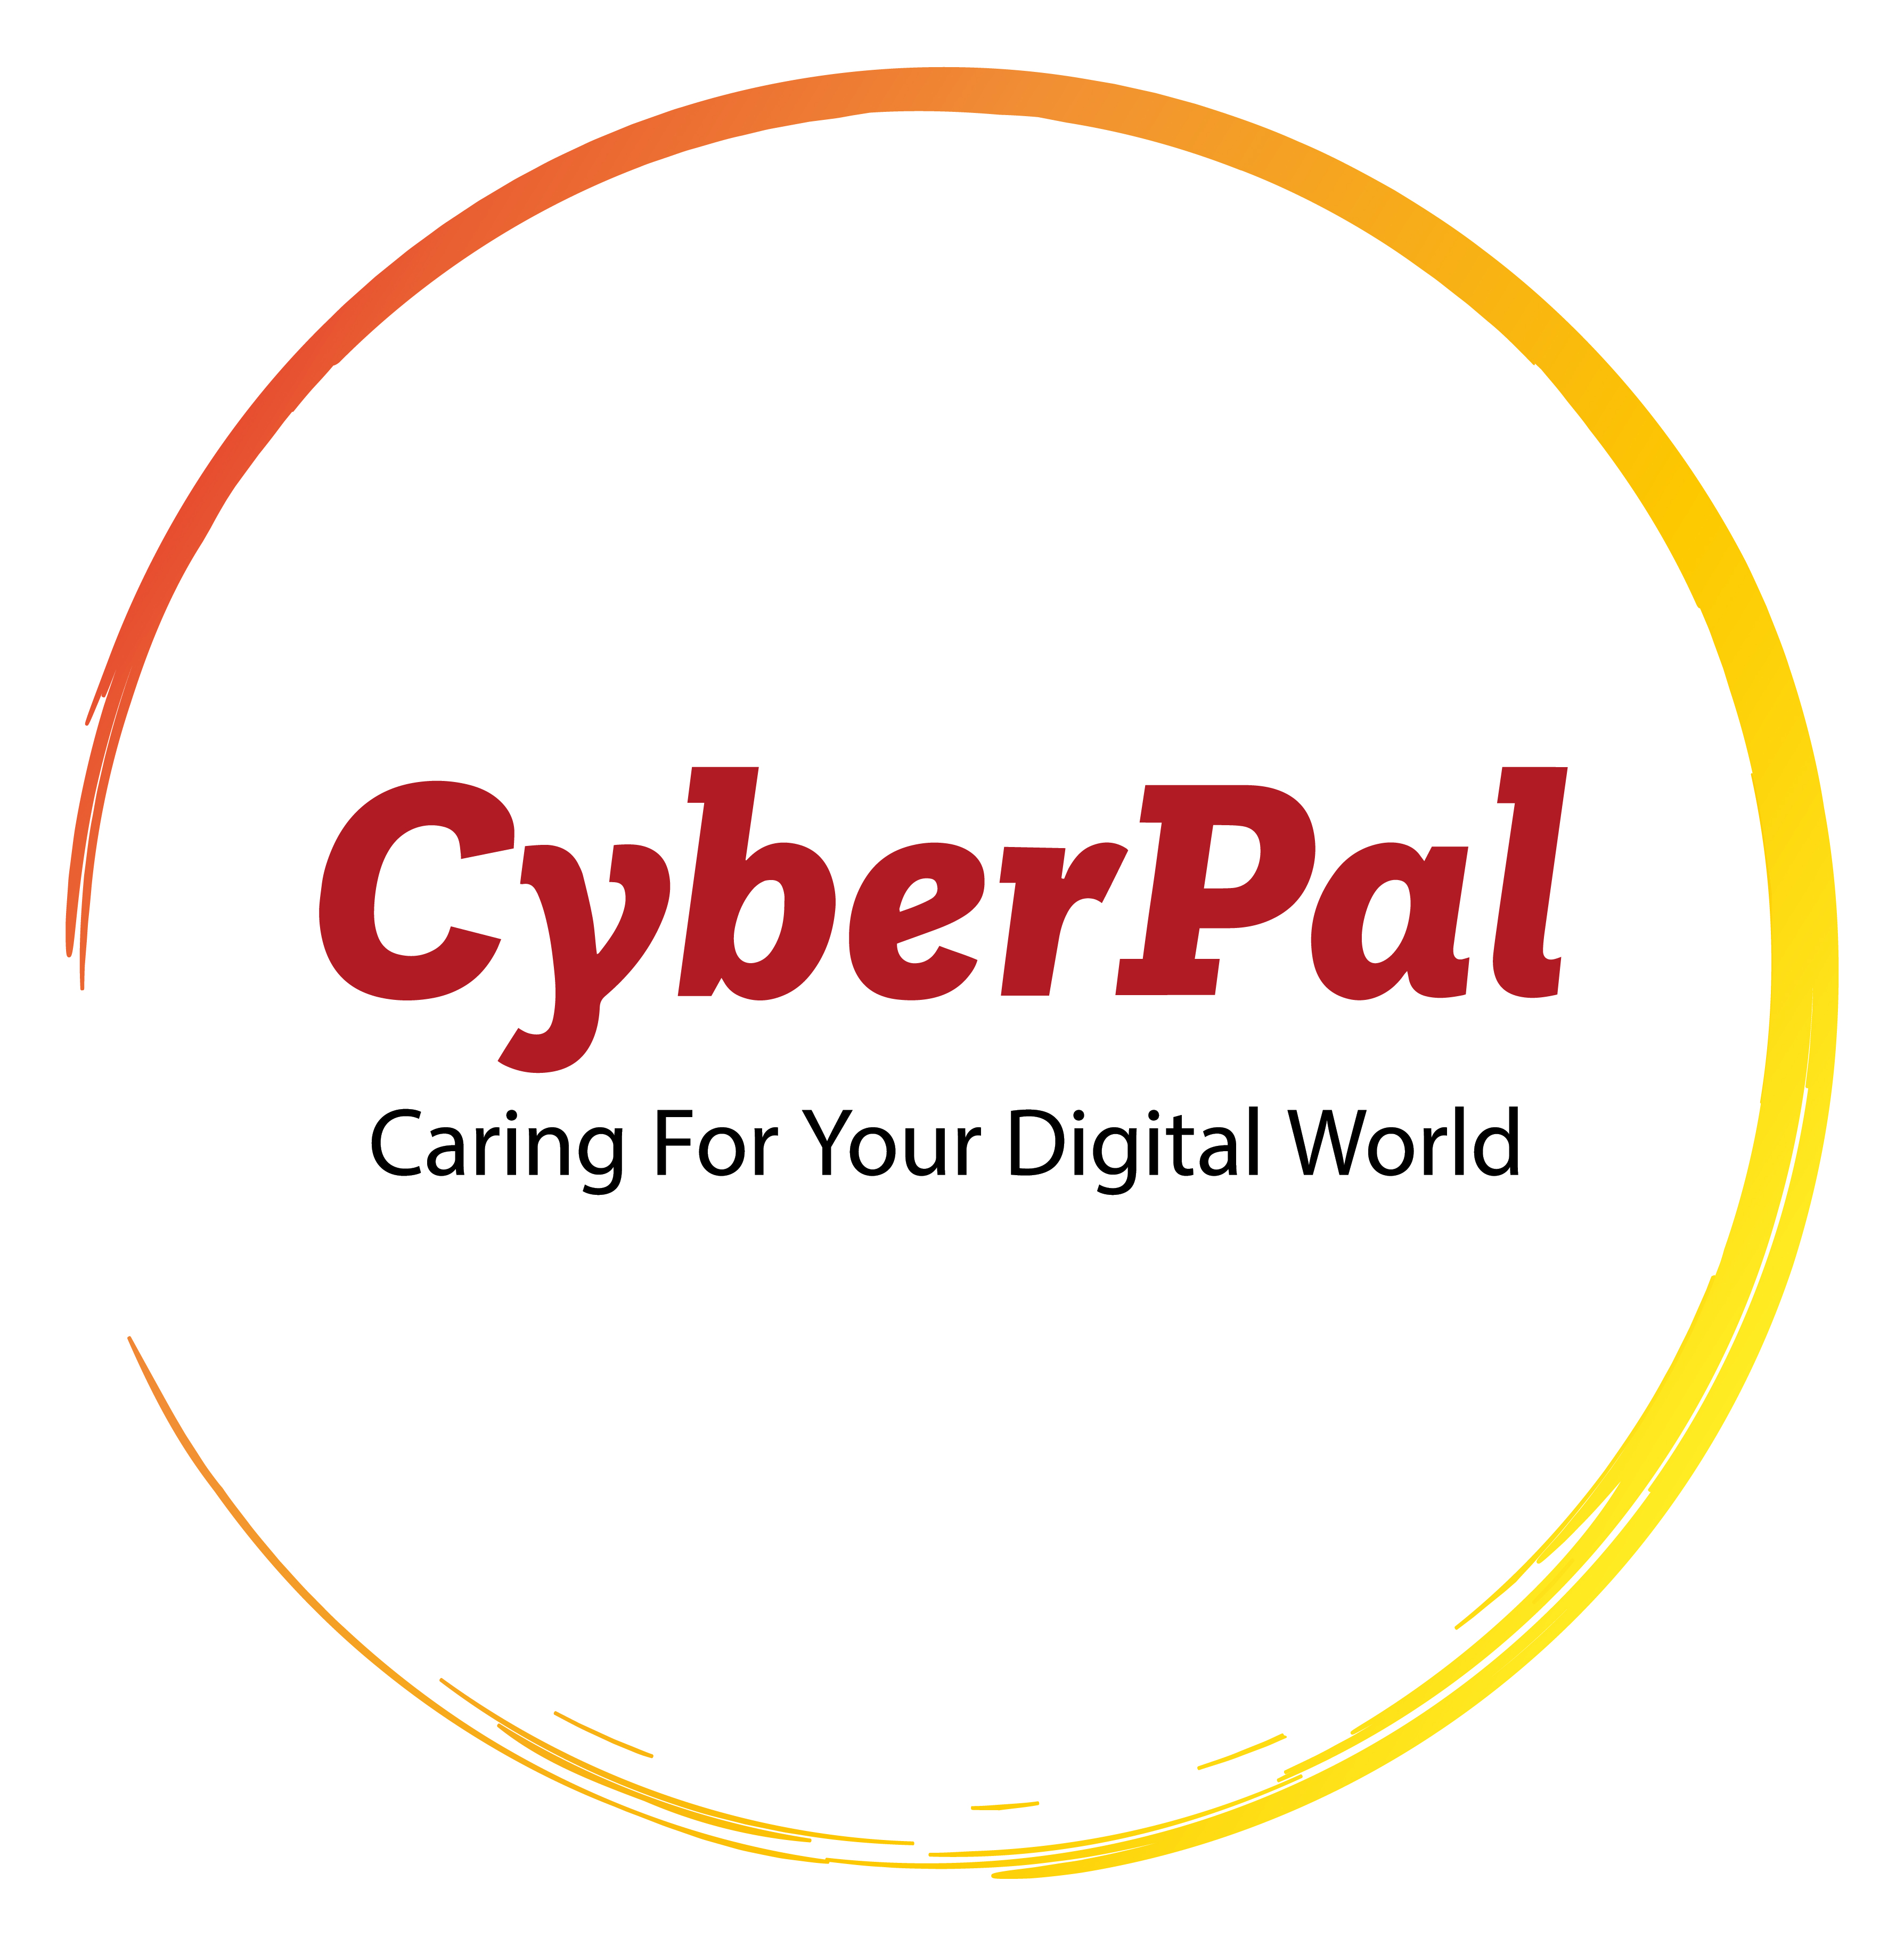 CyberPal